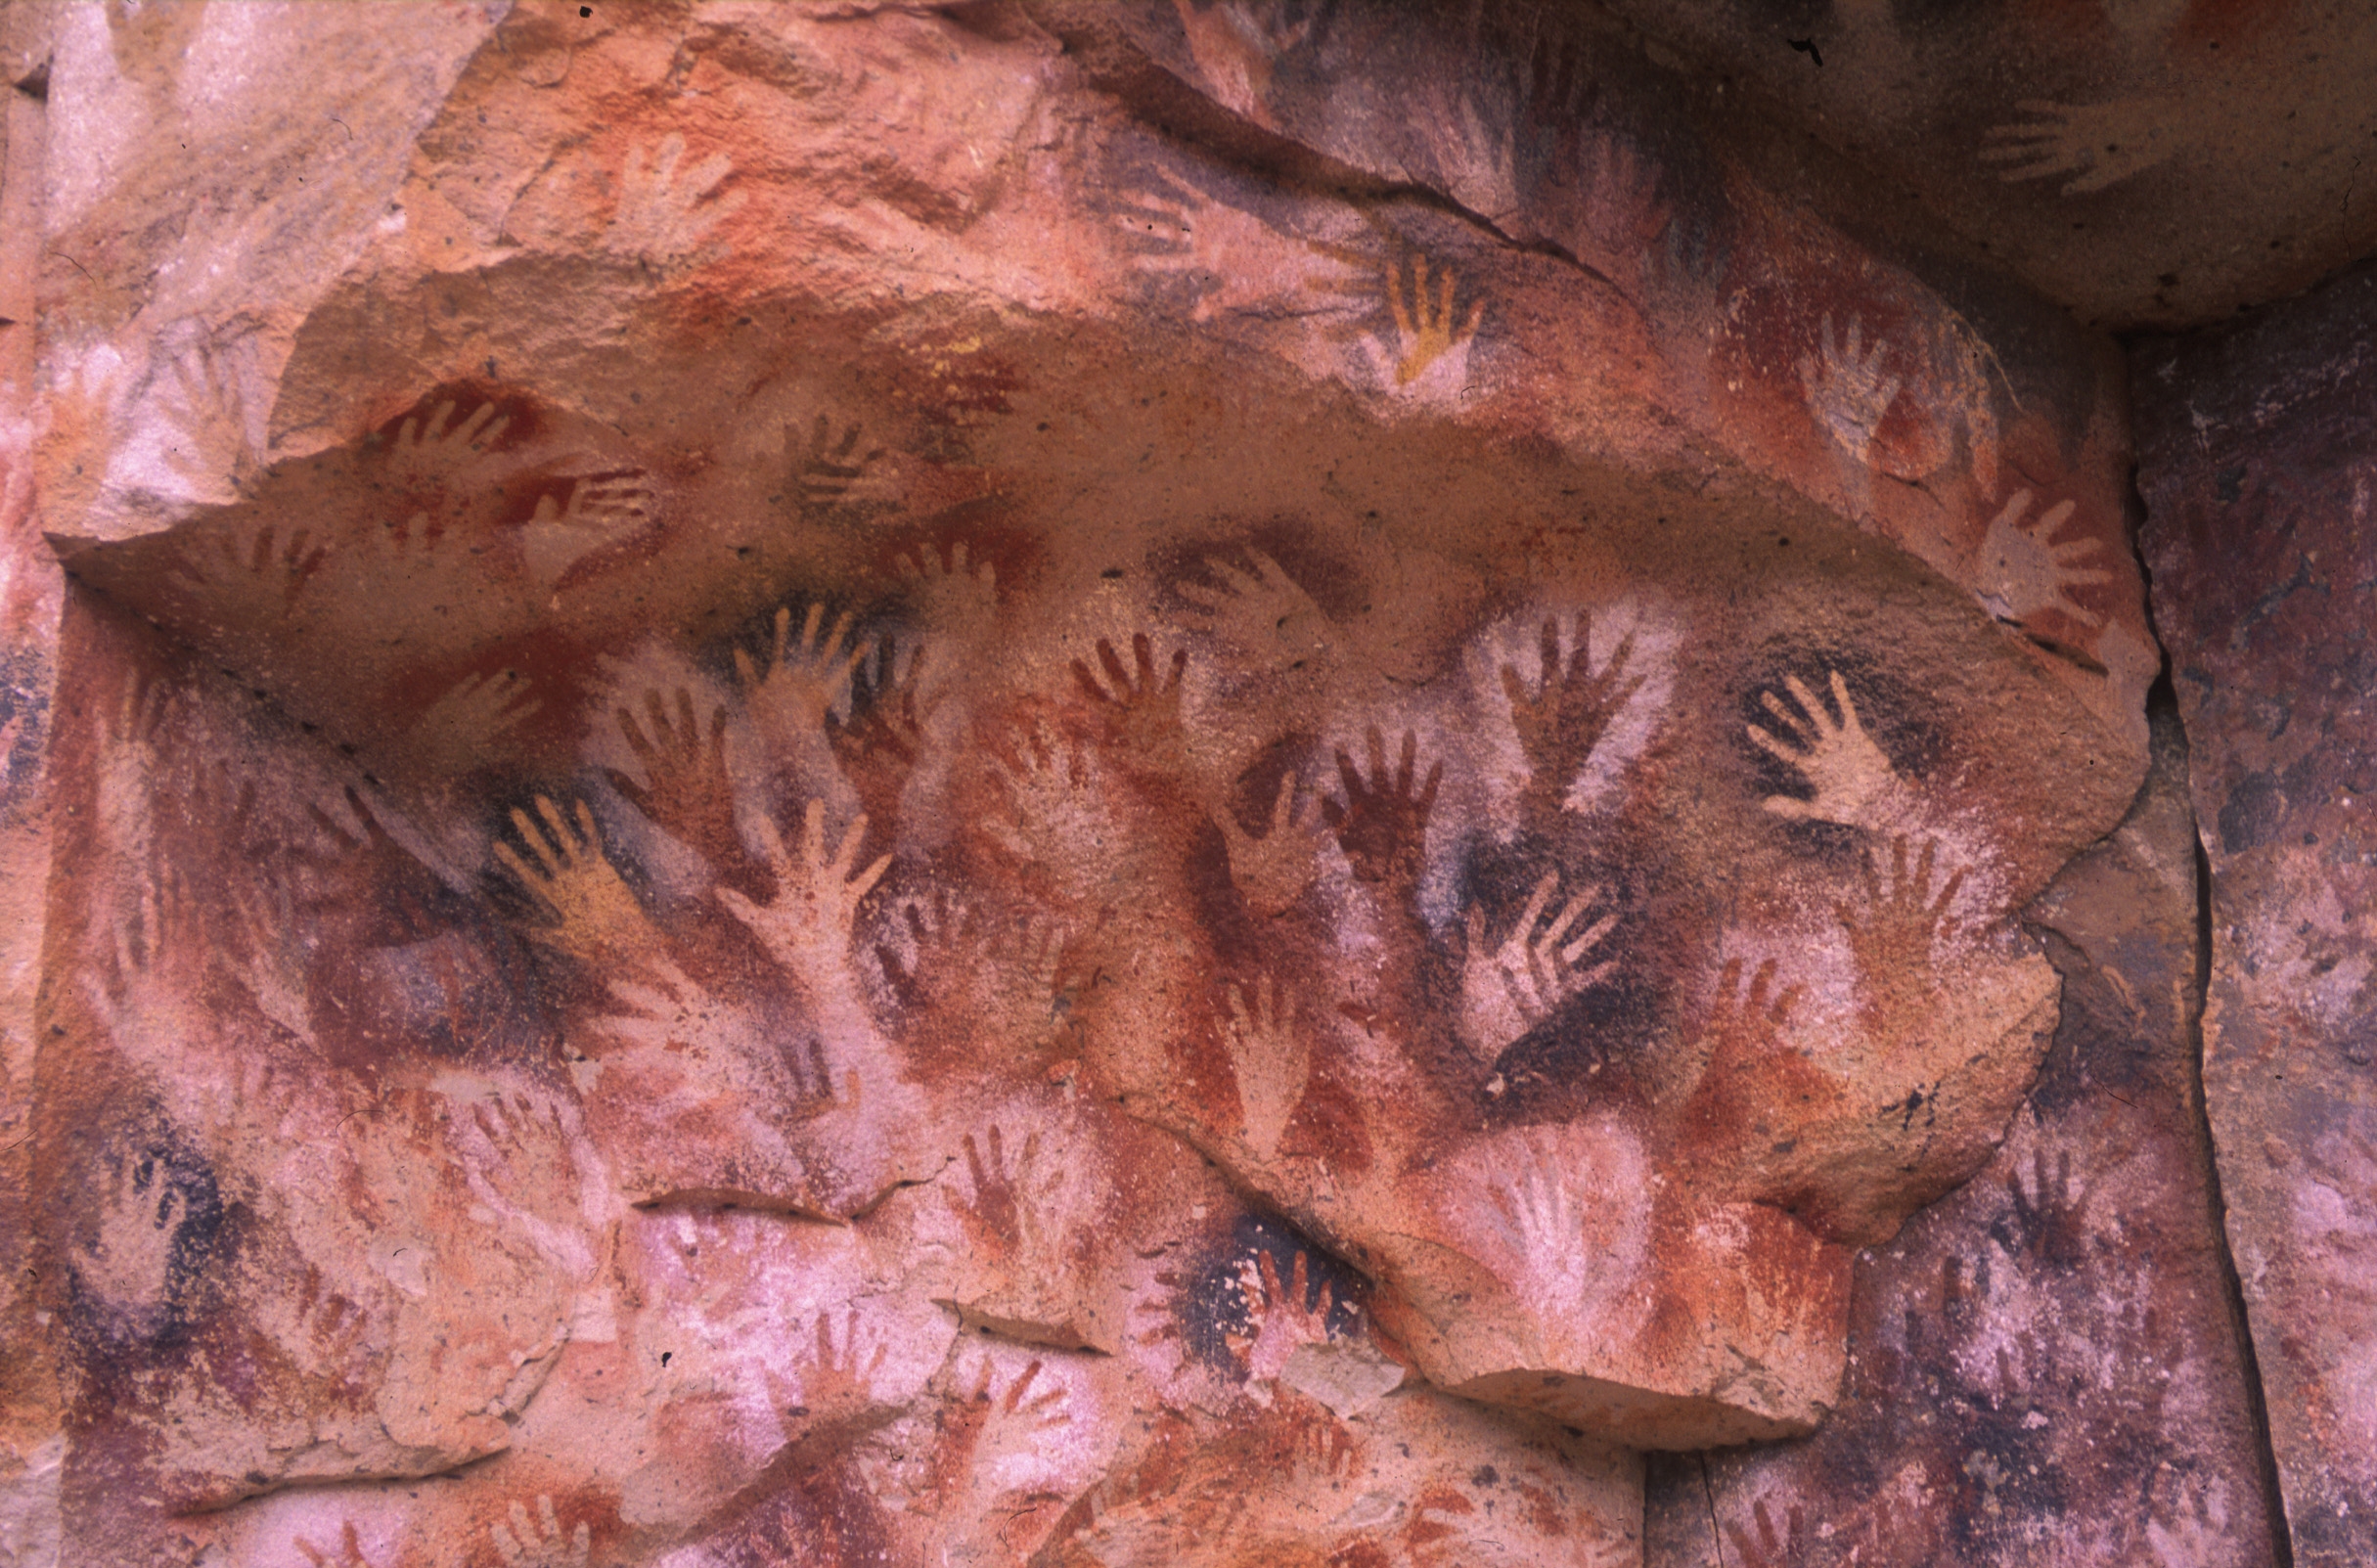 Cueva de los Manos-Painted Hands Caves in Argentina